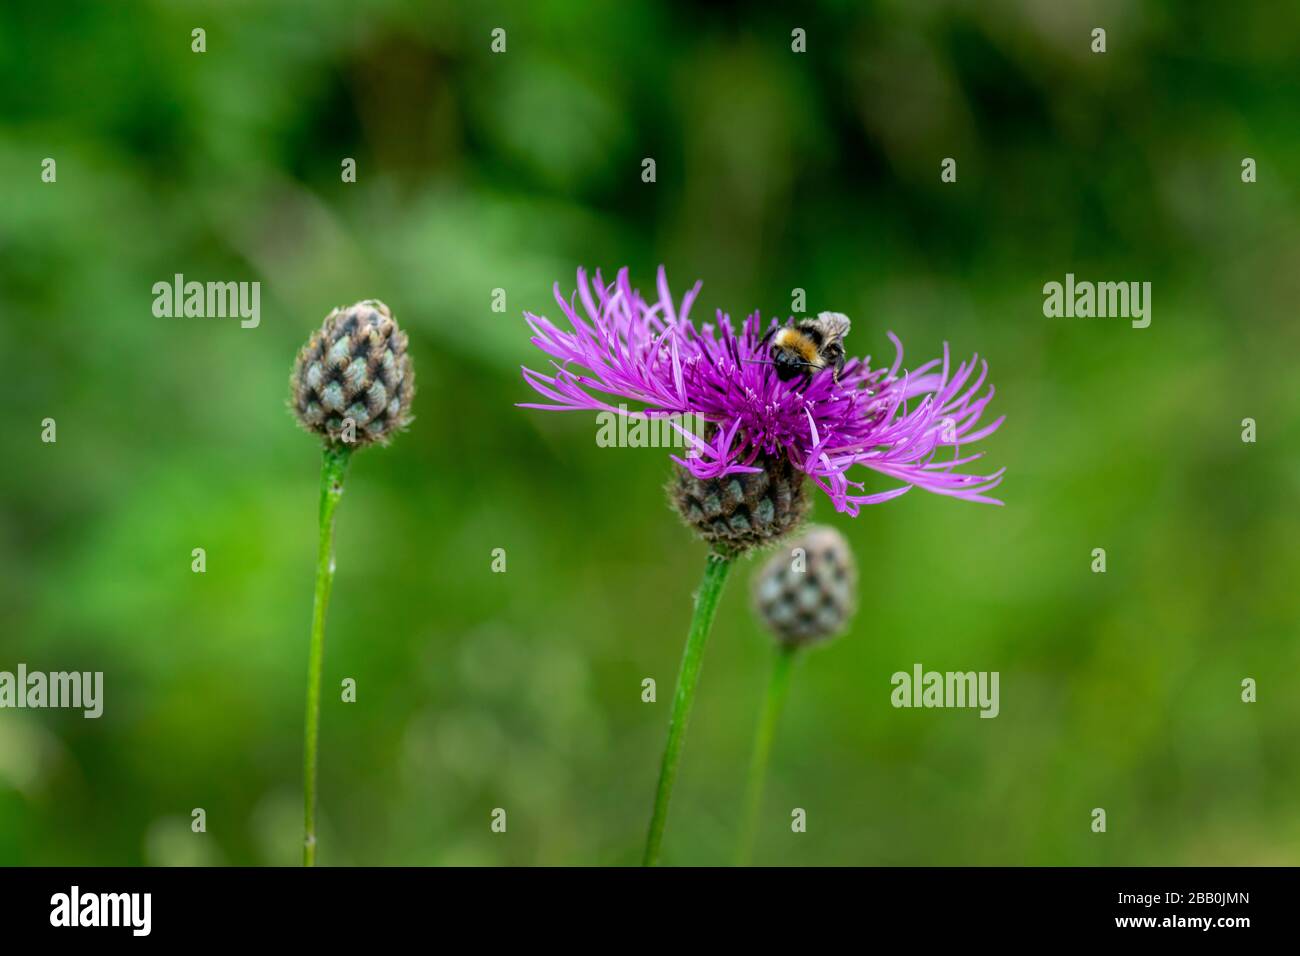 Une fleur de knapweed avec une abeille se nourrissant sur le nectar Banque D'Images